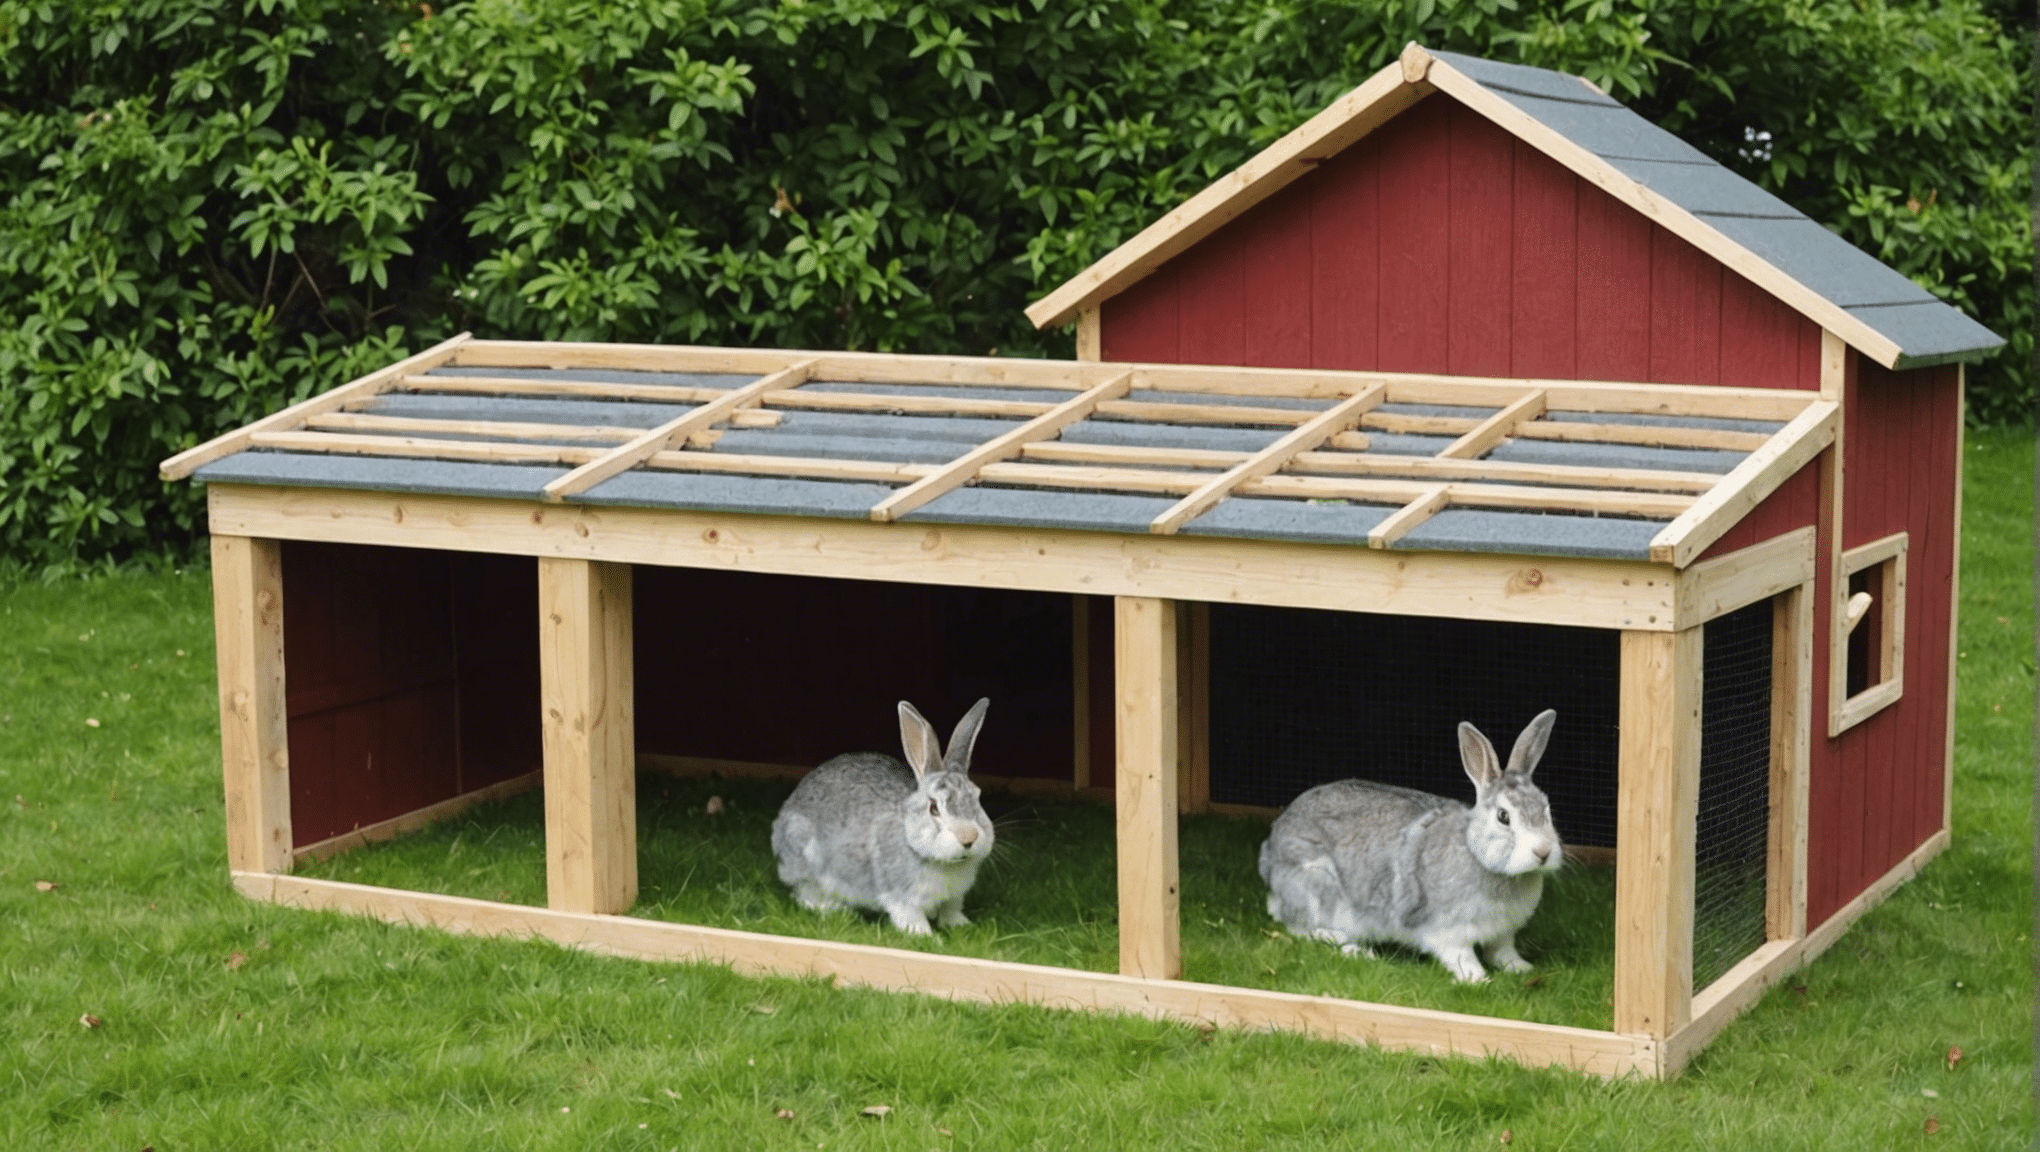 découvrez comment construire un abri pour lapin avec nos conseils et astuces faciles à suivre pour offrir un espace sécurisé et confortable à votre animal de compagnie.